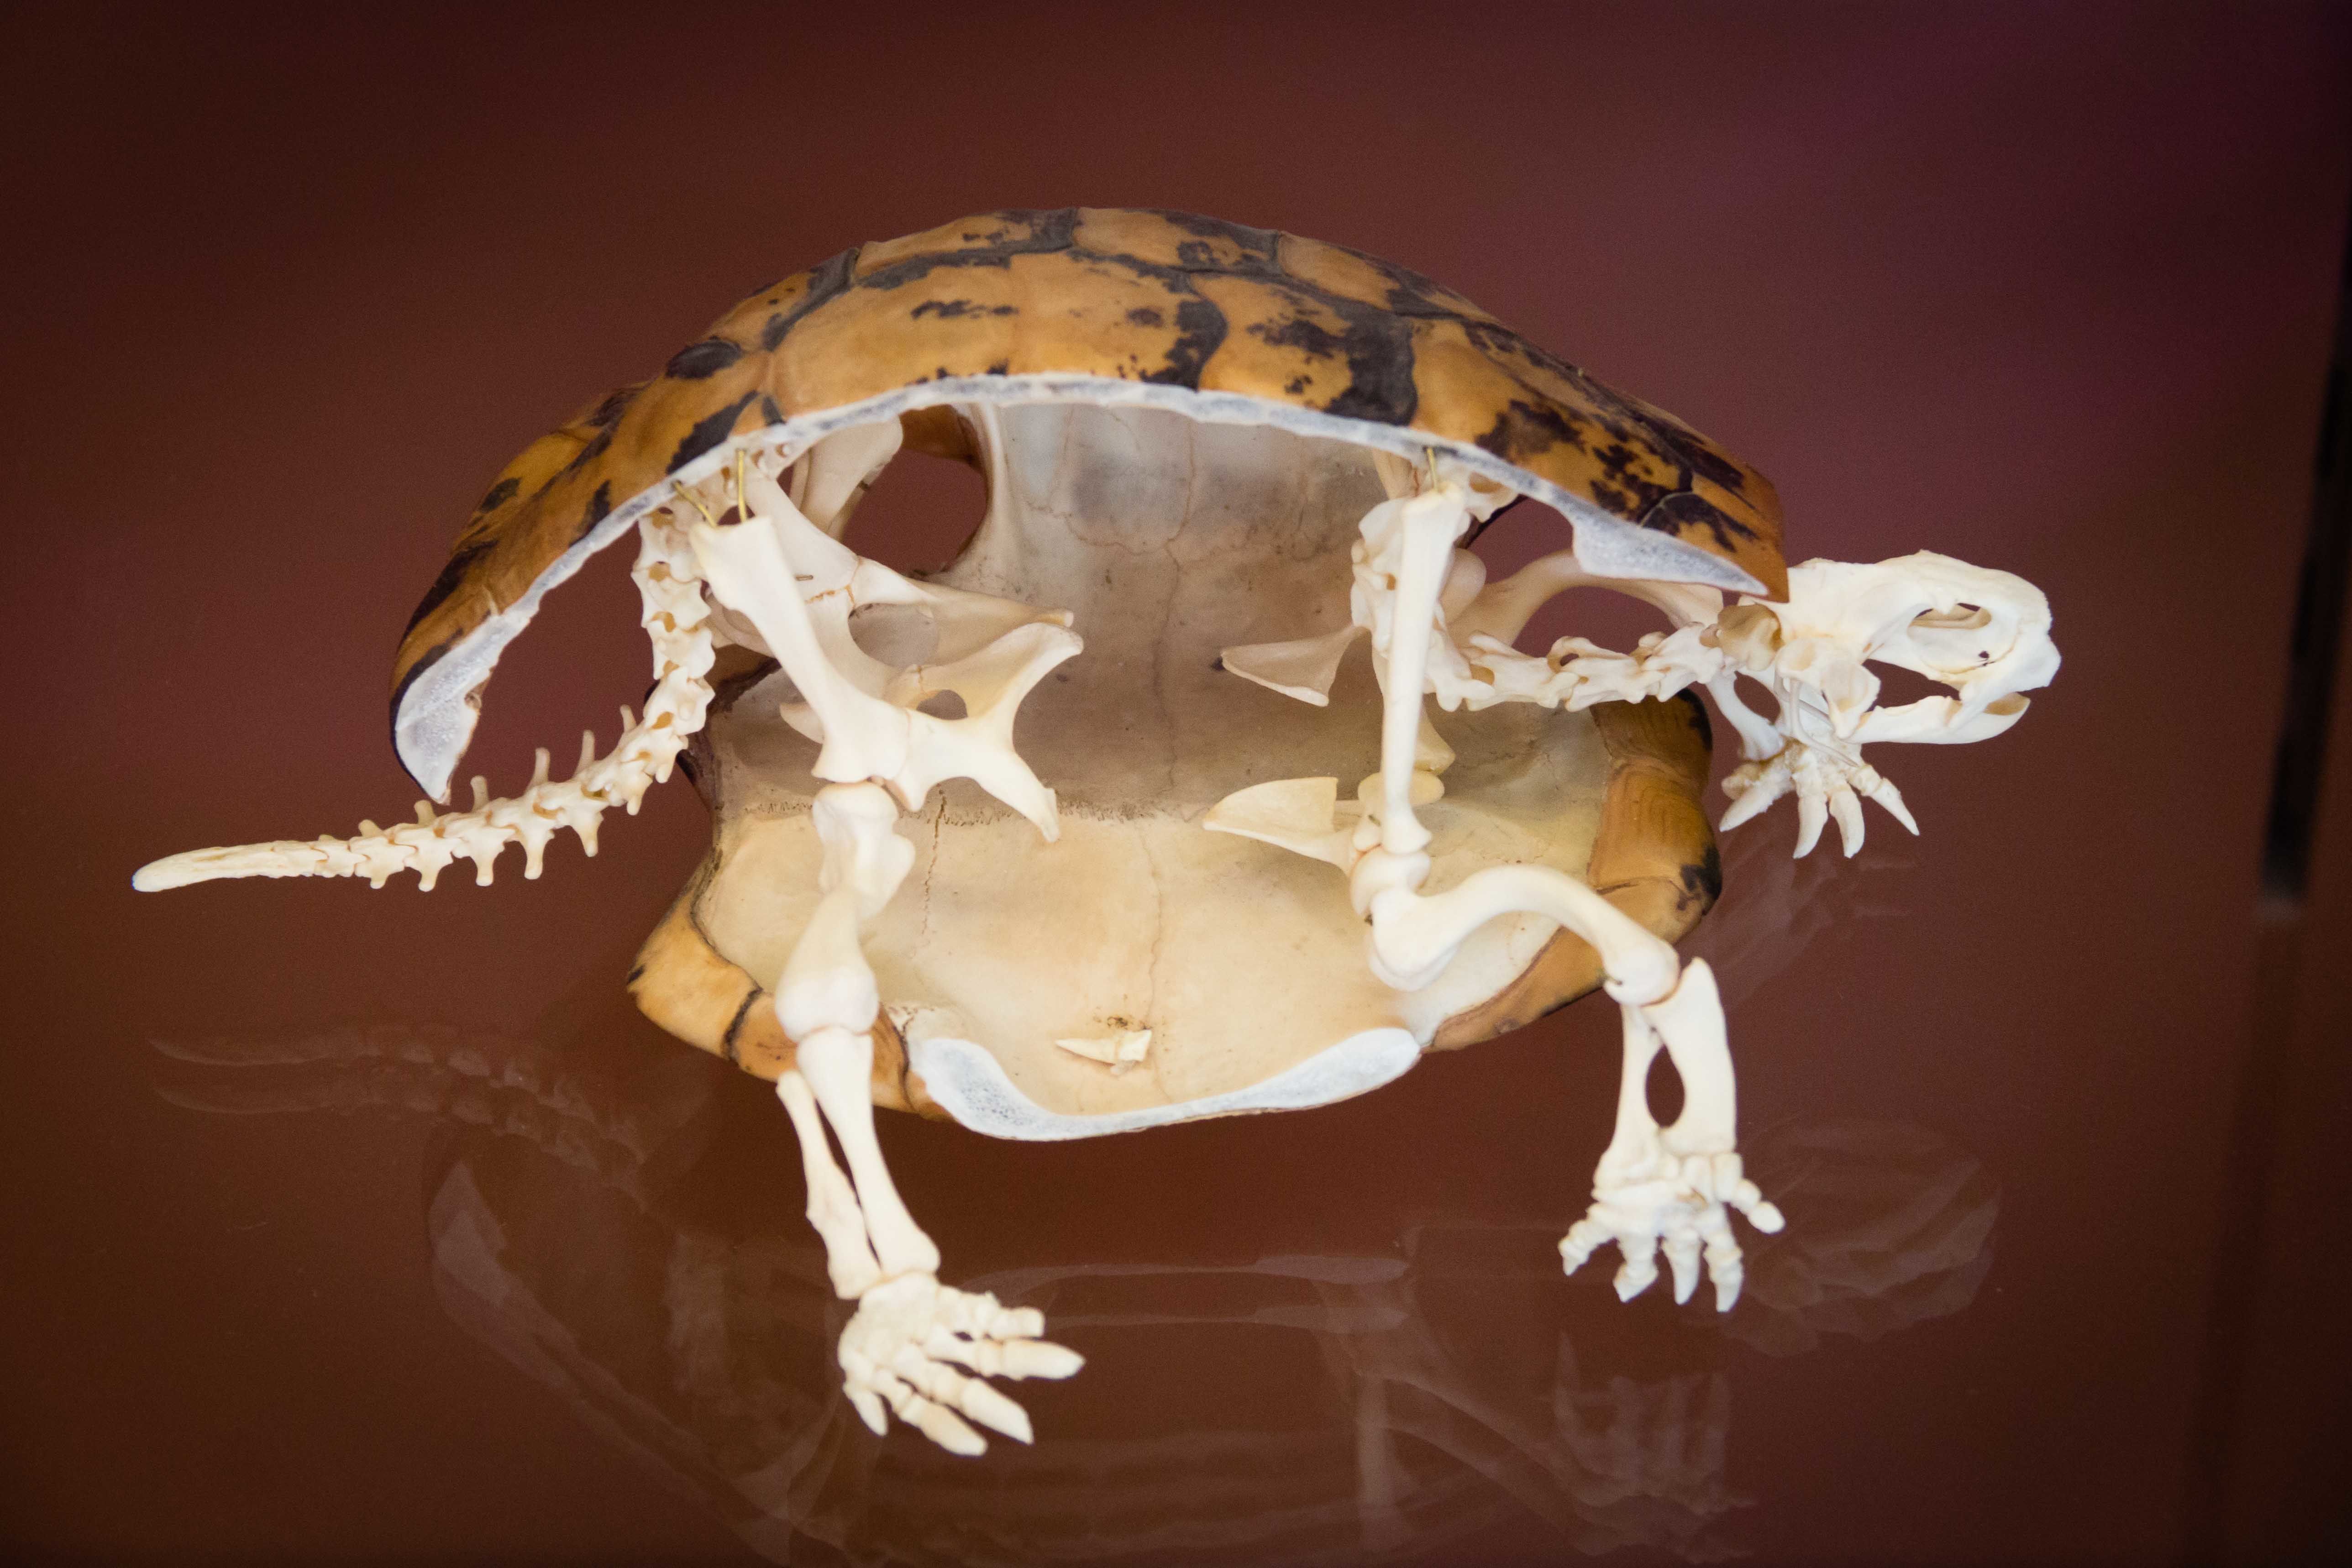 Galerie d'anatomie comparée, squelette de tortue